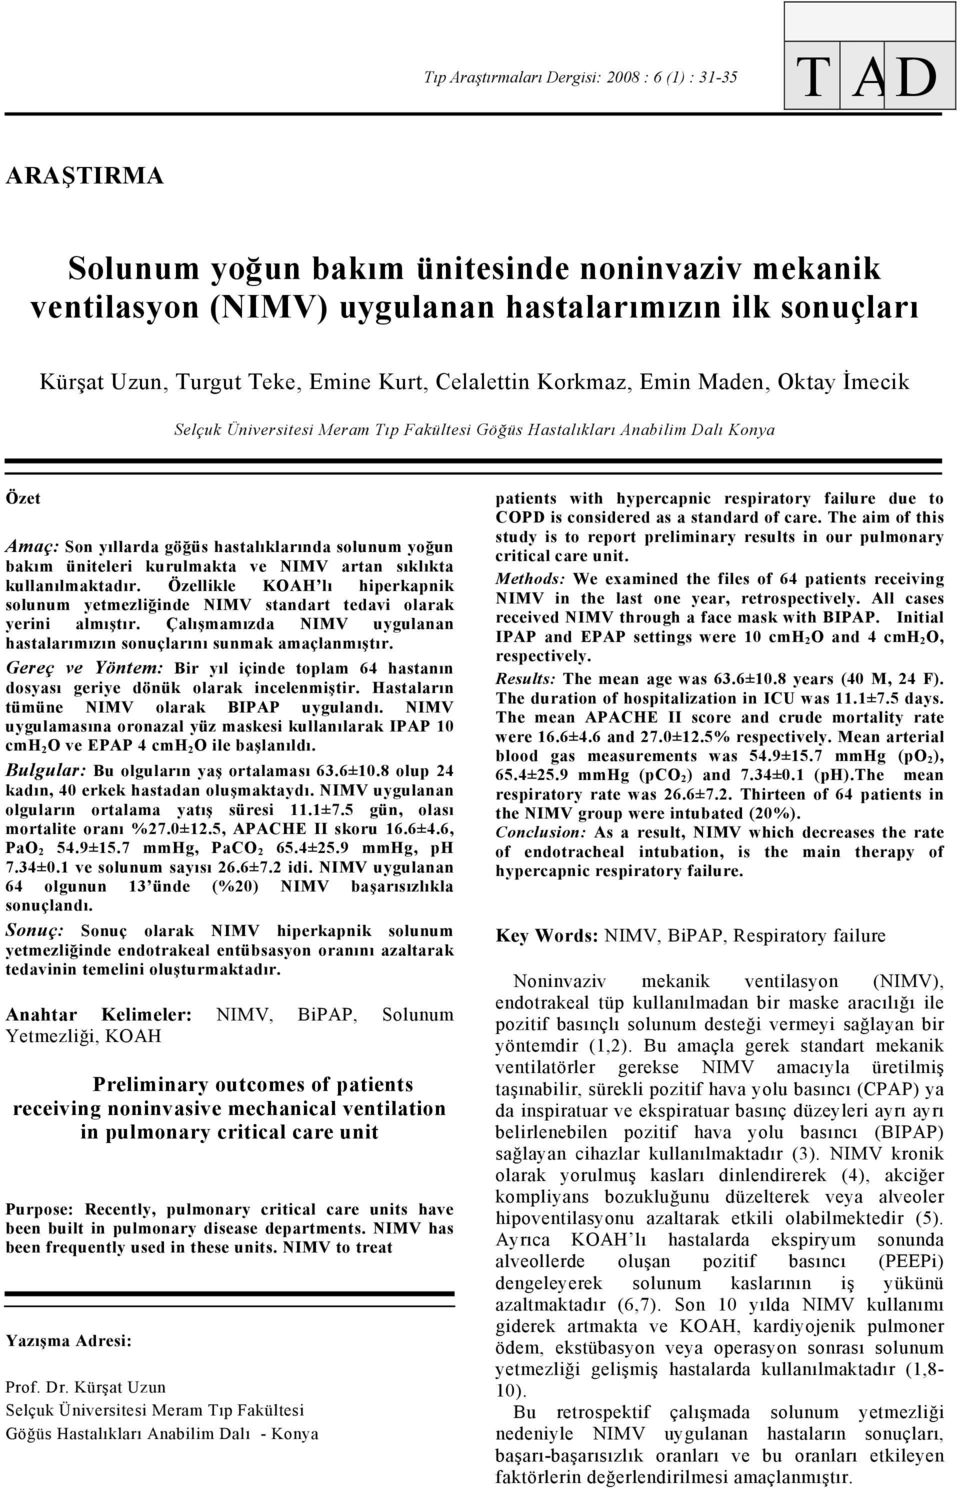 bakım üniteleri kurulmakta ve NIMV artan sıklıkta kullanılmaktadır. Özellikle KOAH lı hiperkapnik solunum yetmezliğinde NIMV standart tedavi olarak yerini almıştır.